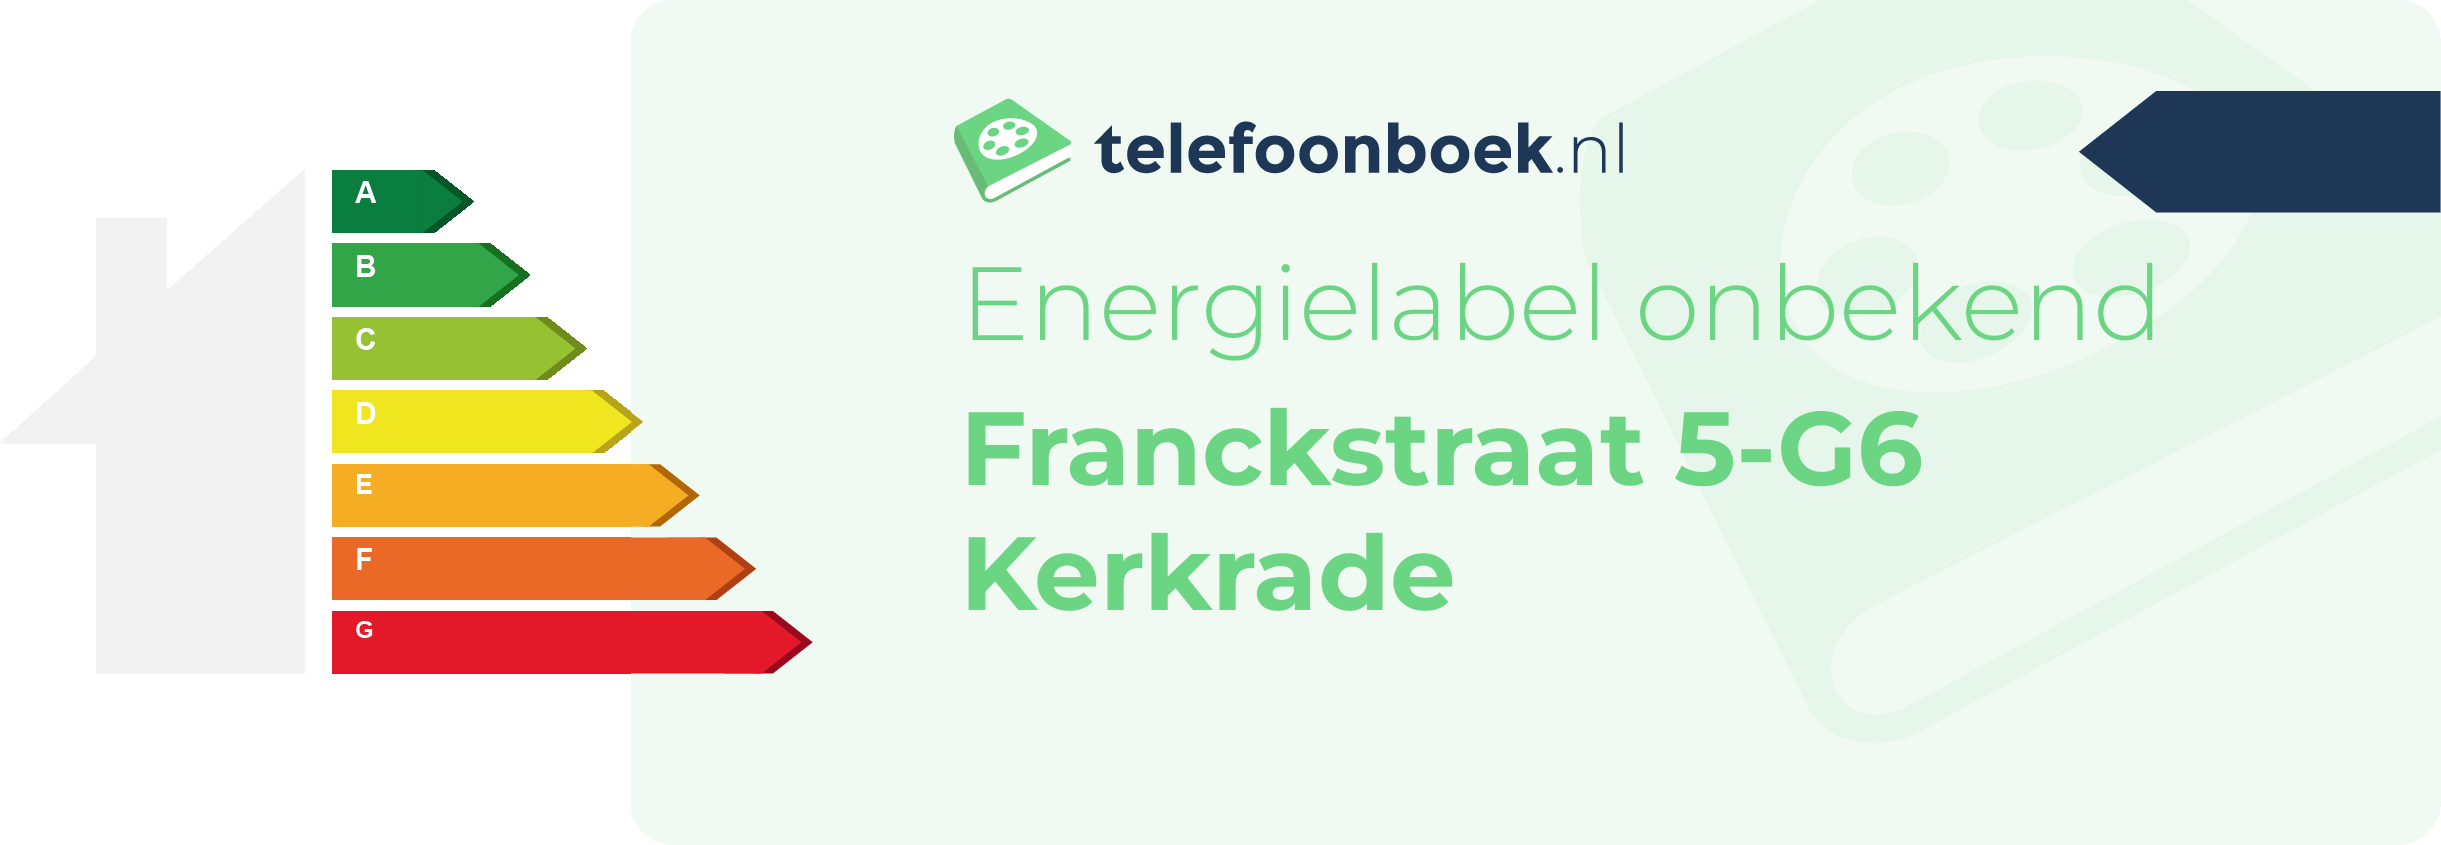 Energielabel Franckstraat 5-G6 Kerkrade